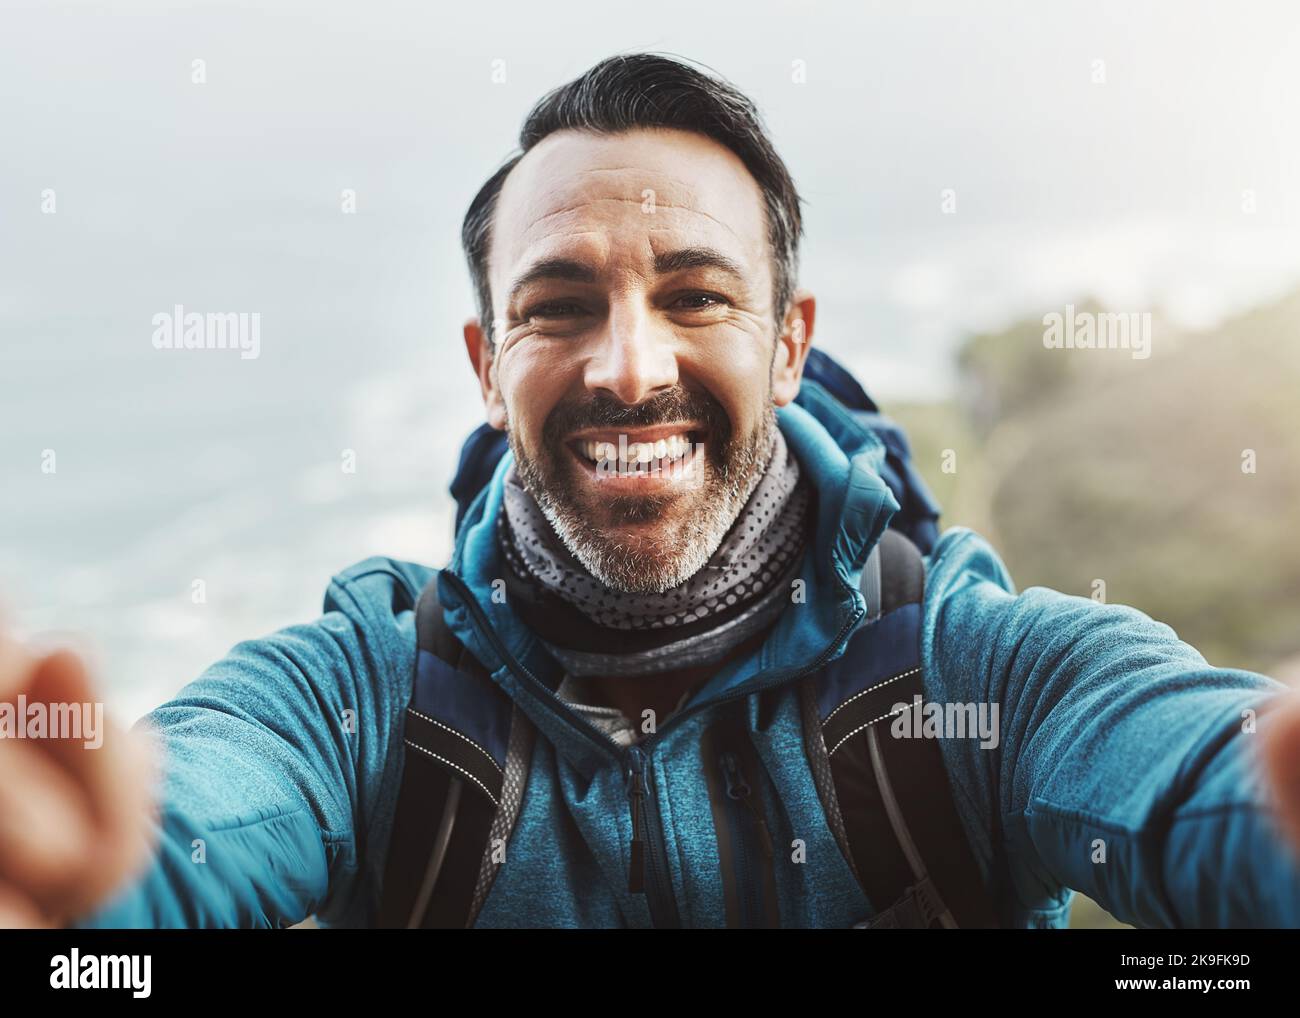 Être heureux ne passe jamais par le style. Portrait d'un homme d'âge moyen prenant un selfie dans les montagnes. Banque D'Images